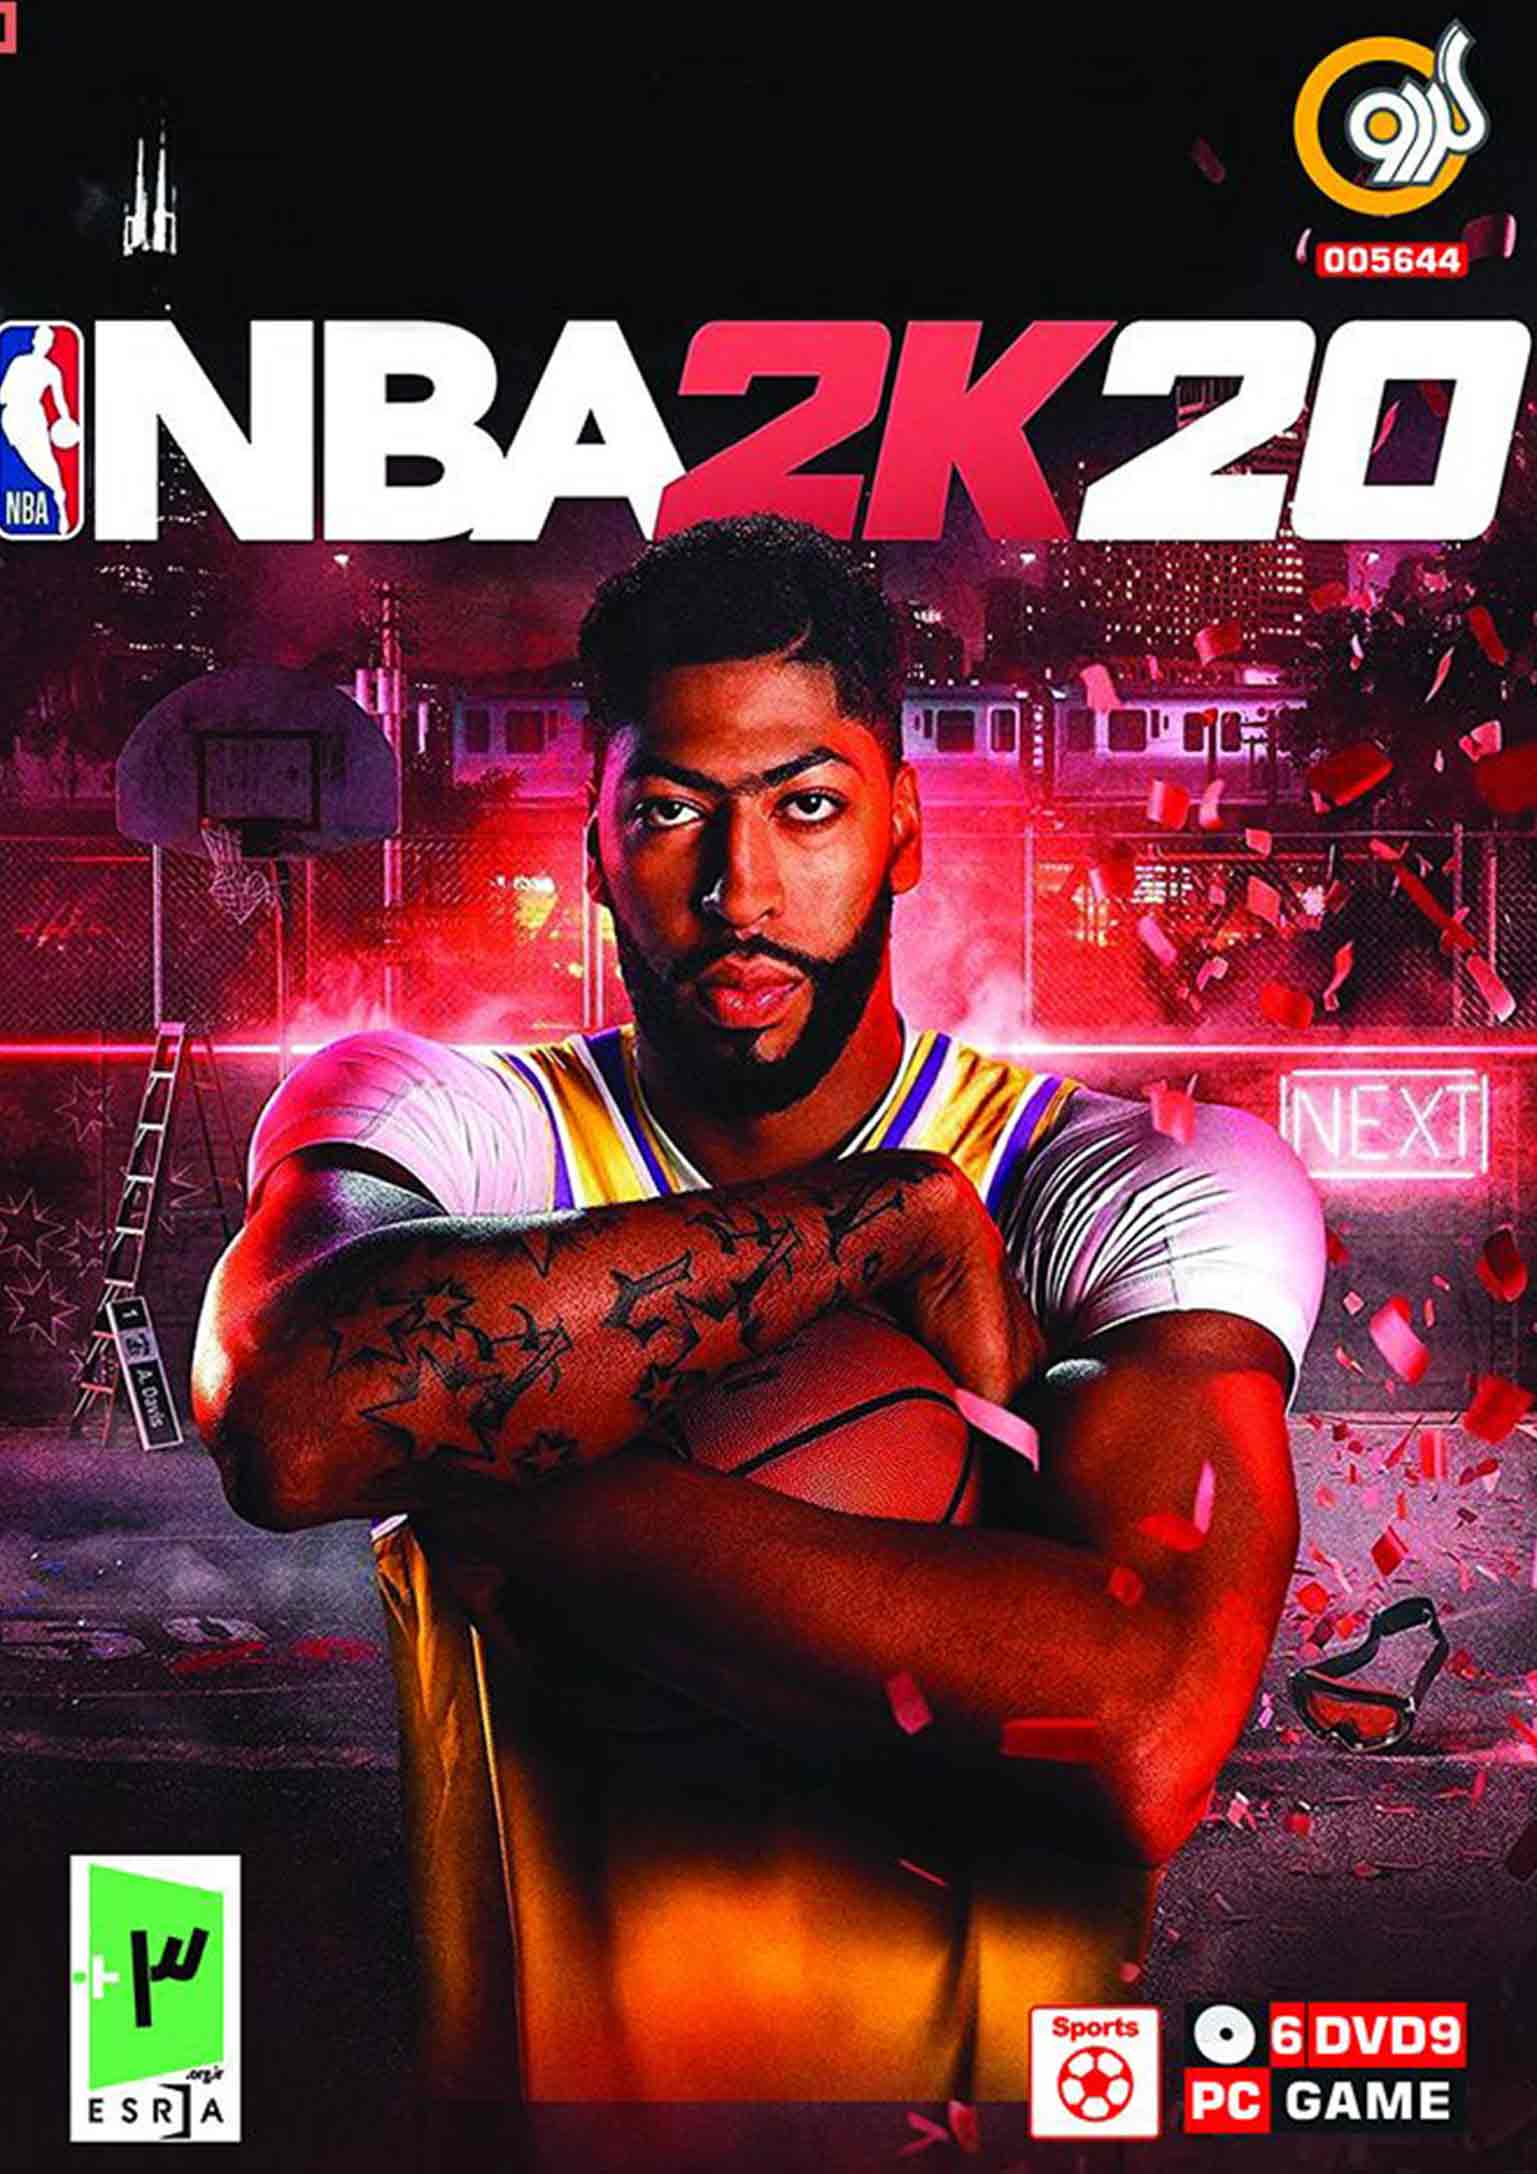 بازی NBA 2K20 برای PC